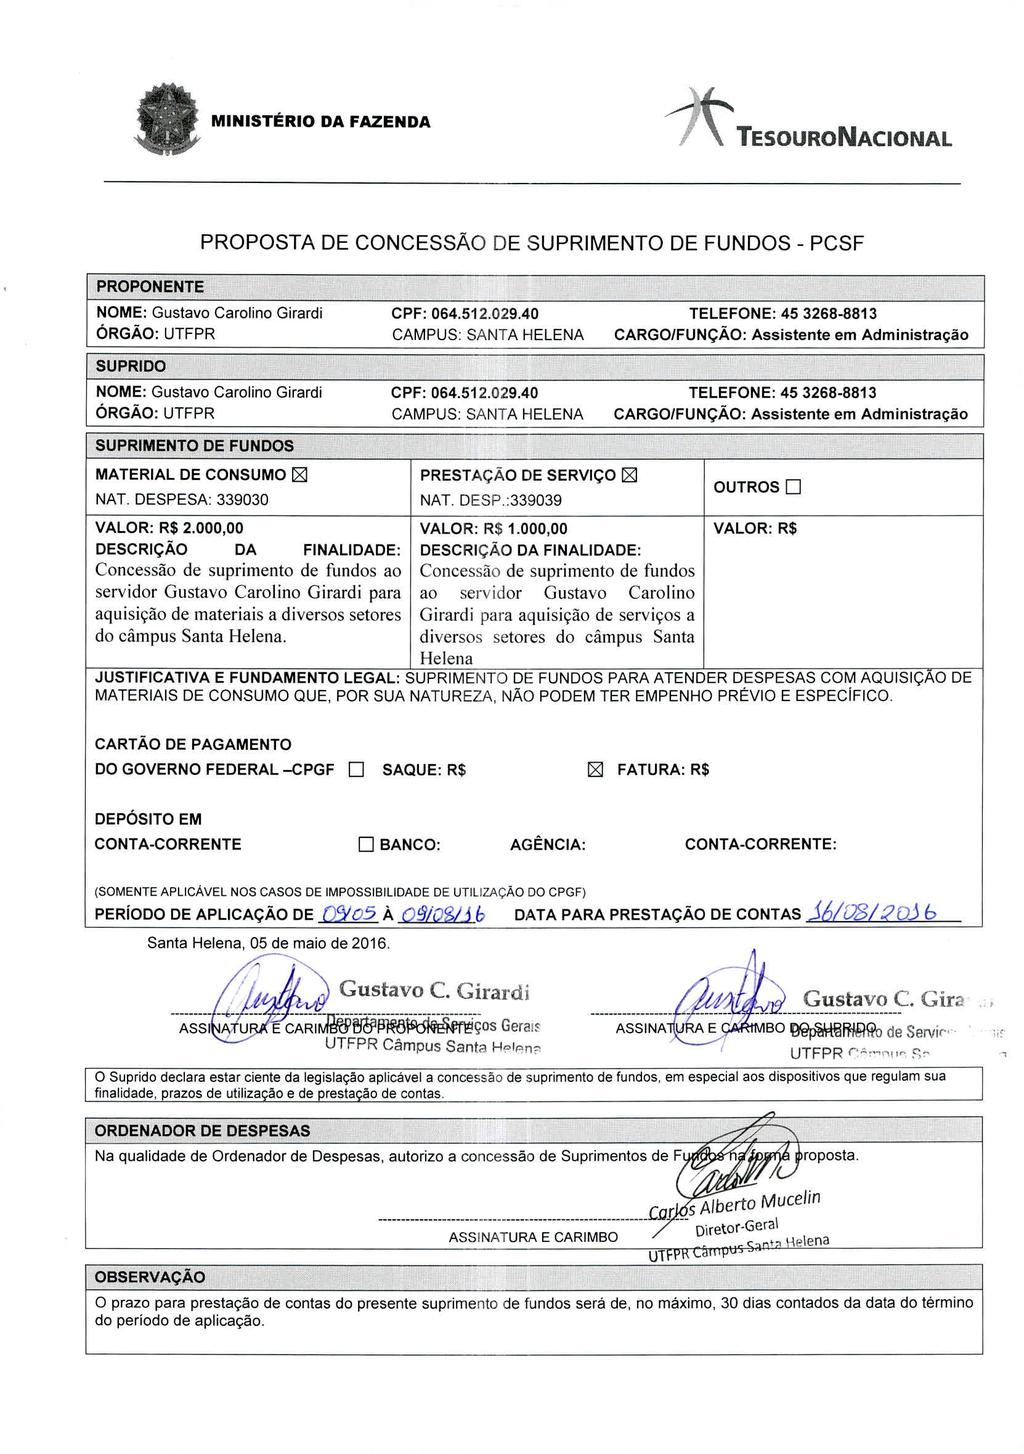 MINISTÉRIO DA FAZENDA TESOURONACIONAL PROPOSTA DE CONCESSÃO DE SUPRIMENTO DE FUNDOS - PCSF PROPONENTE NOME: Gustavo Carolino Girardi CPF: 064.512.029.